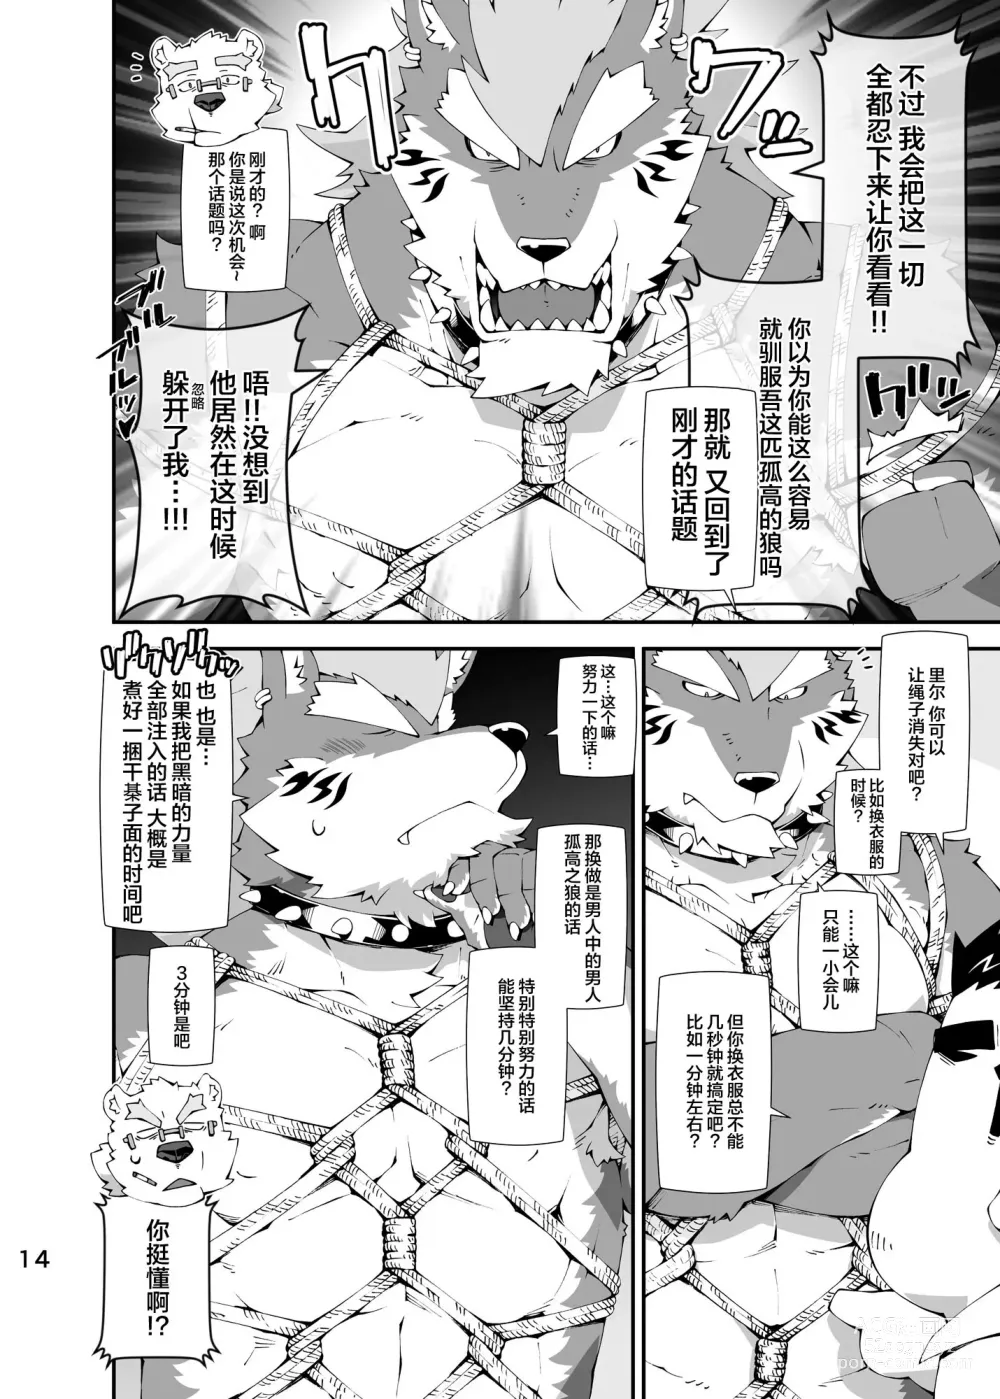 Page 13 of doujinshi Shirokuma to Fe